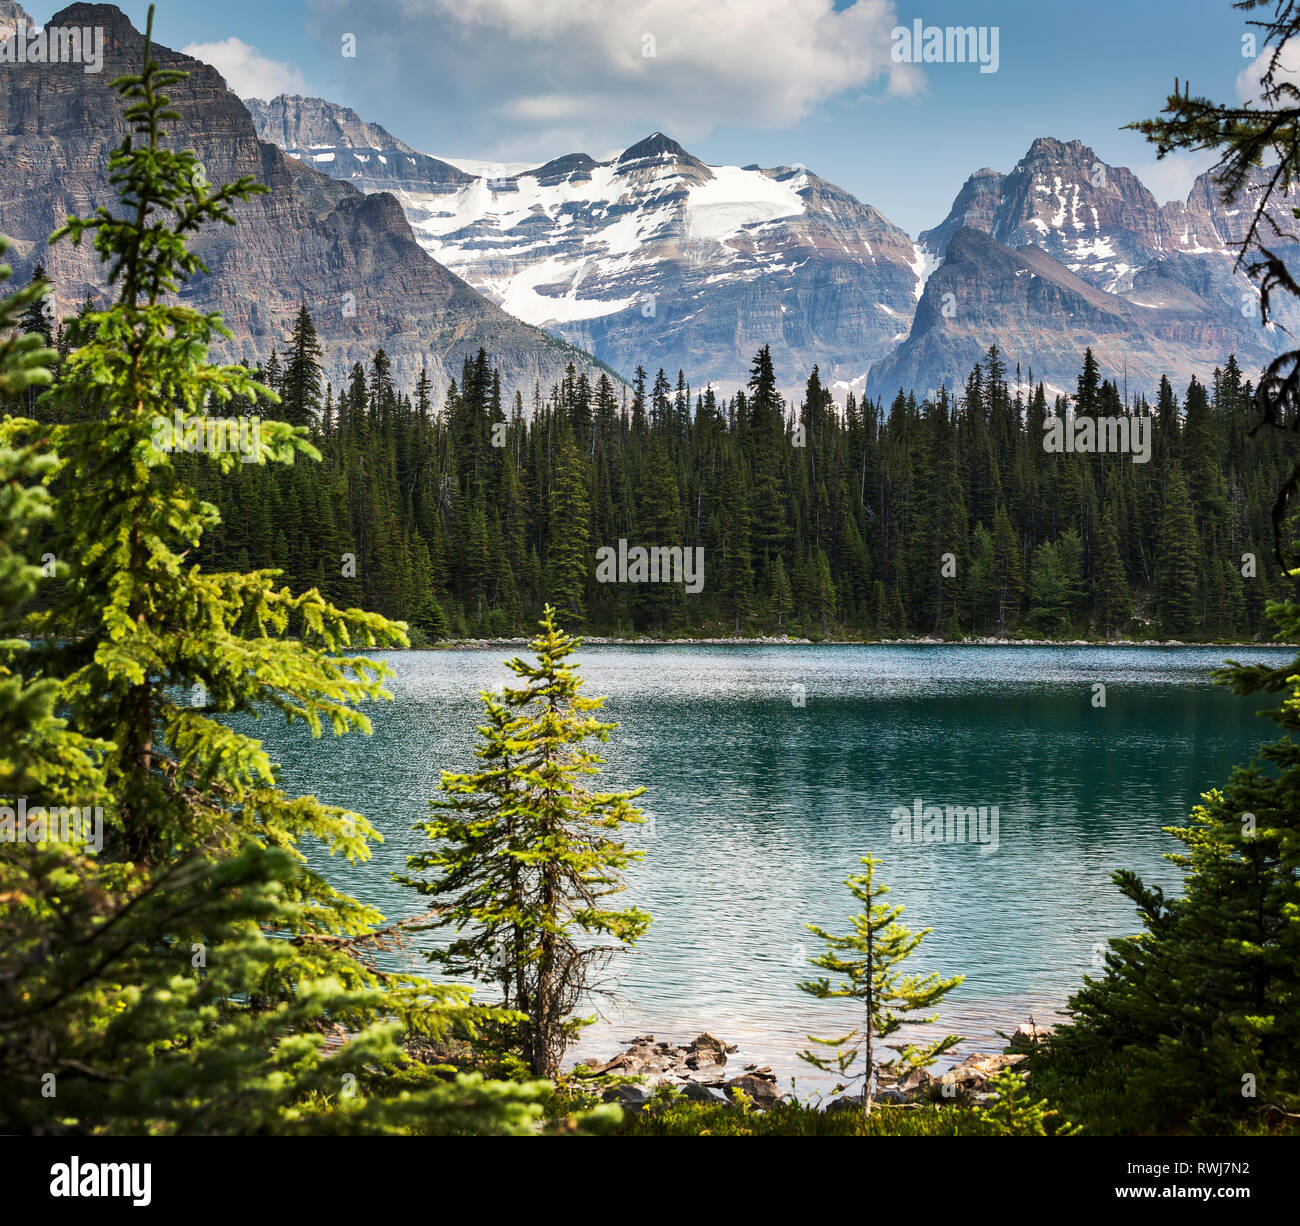 Lago alpino incorniciato da alberi con la gamma della montagna in background; British Columbia, Canada Foto Stock